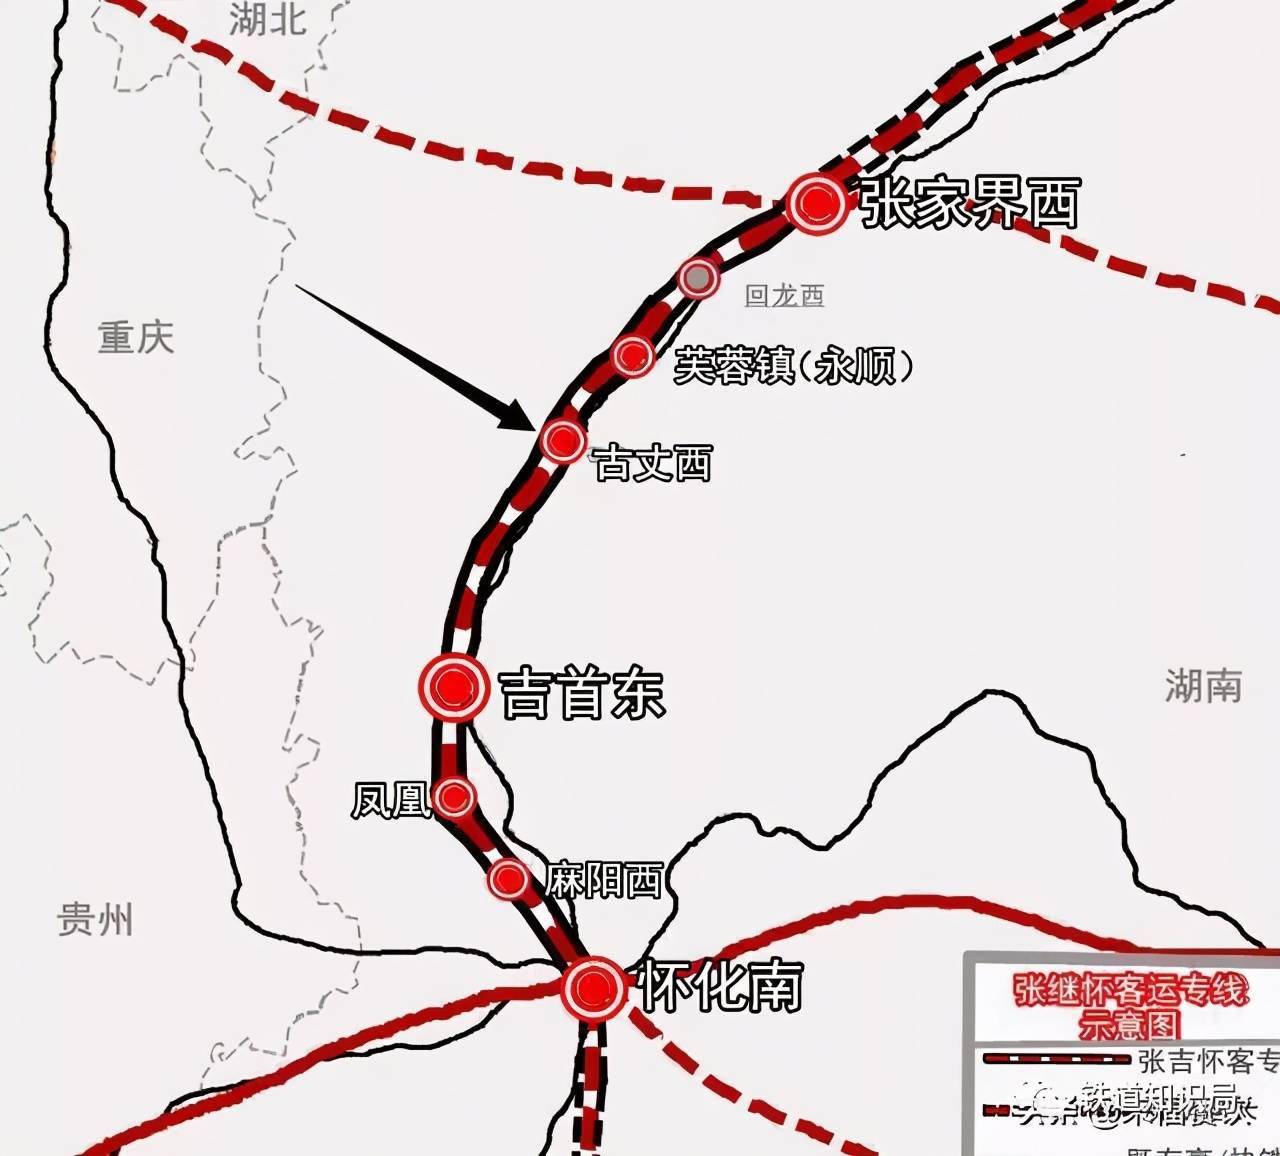 吉首市,怀化市的高速铁路, 是《中长期铁路网规划》(2016年修订版)中"